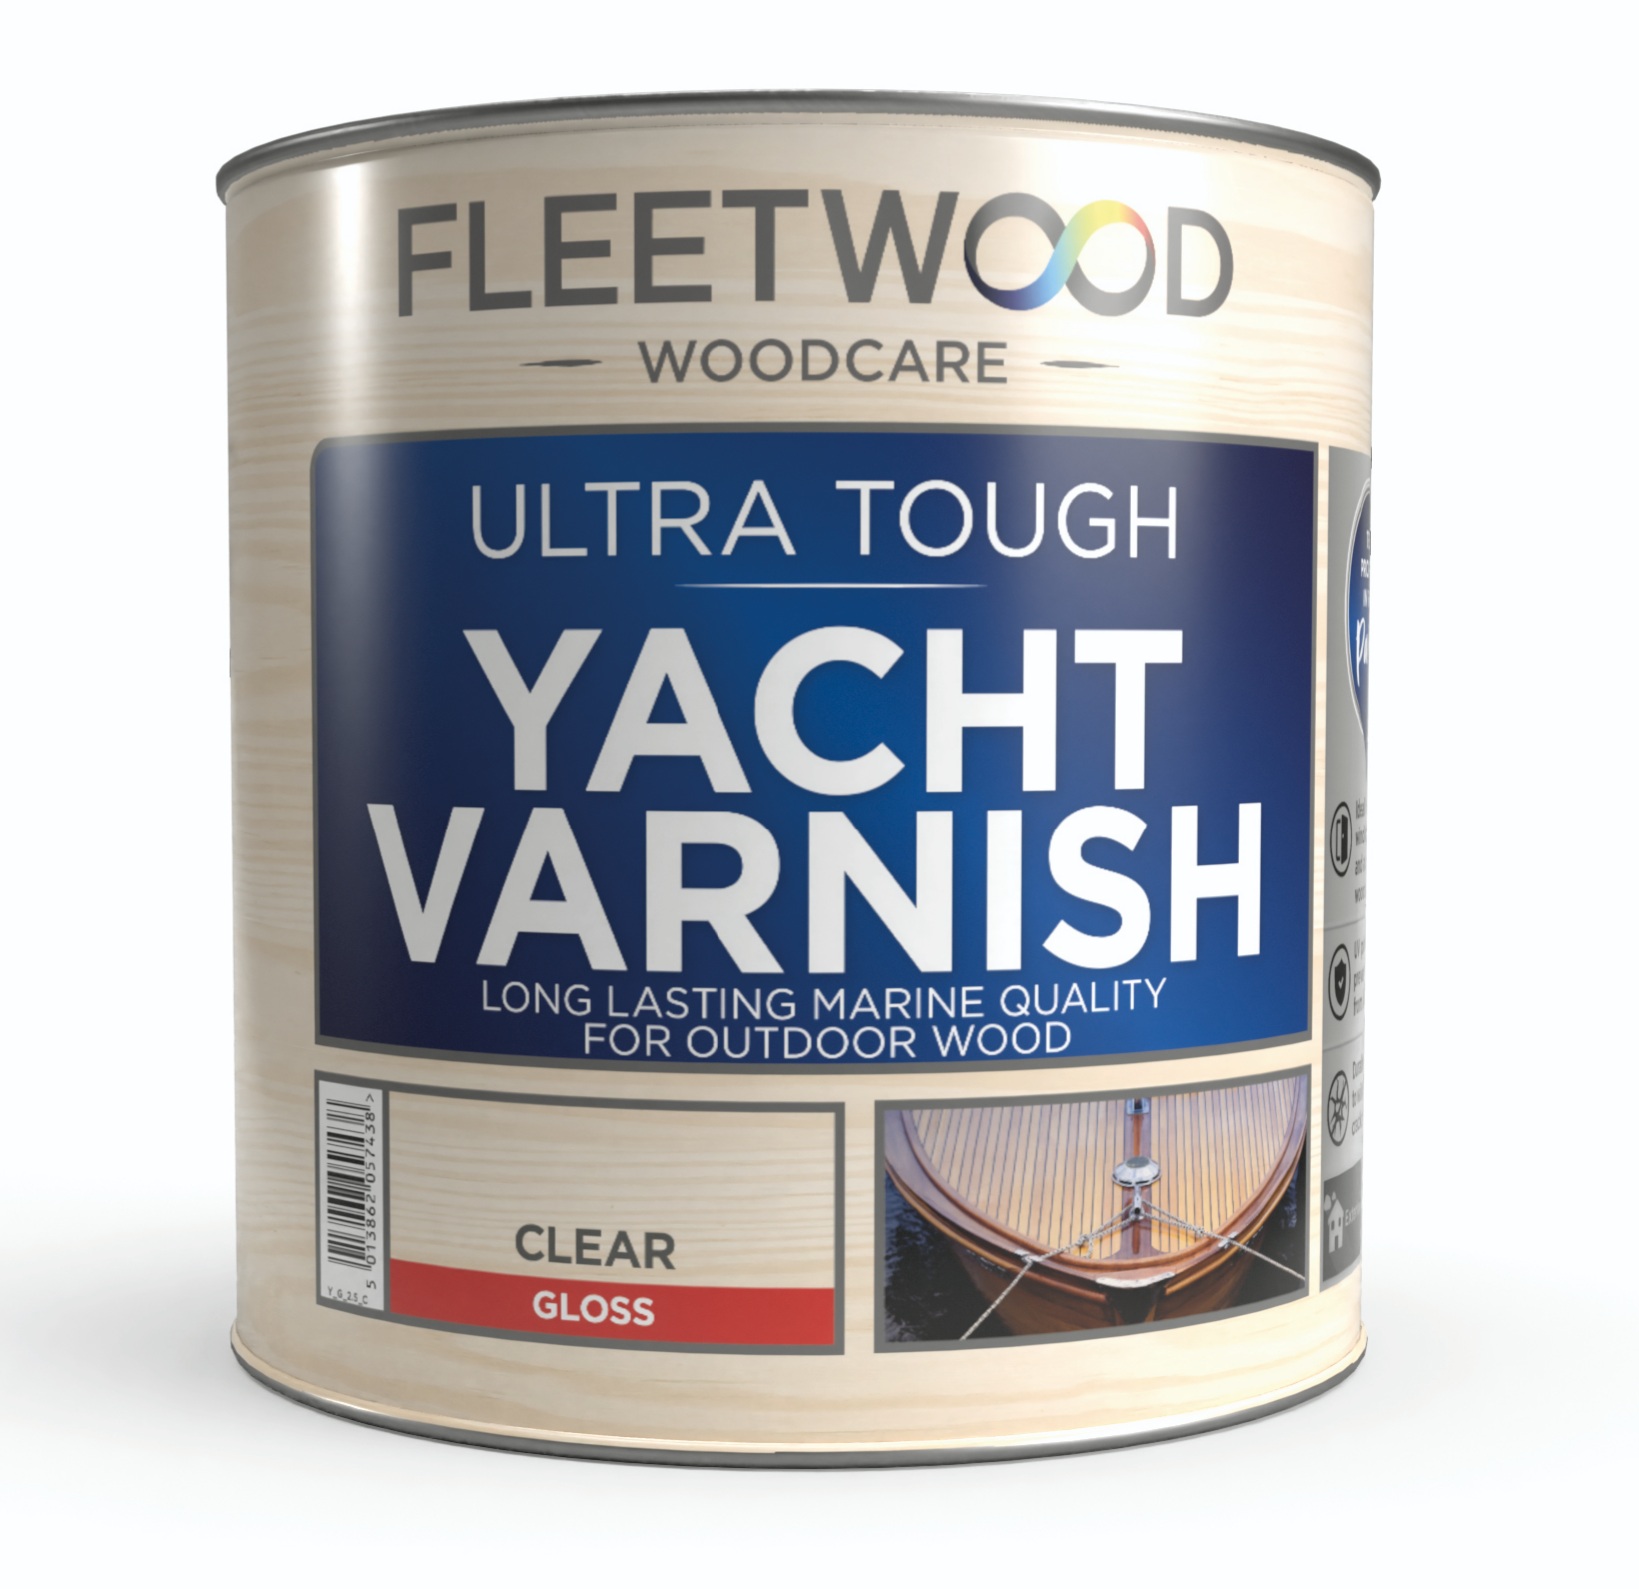 no nonsense yacht varnish review